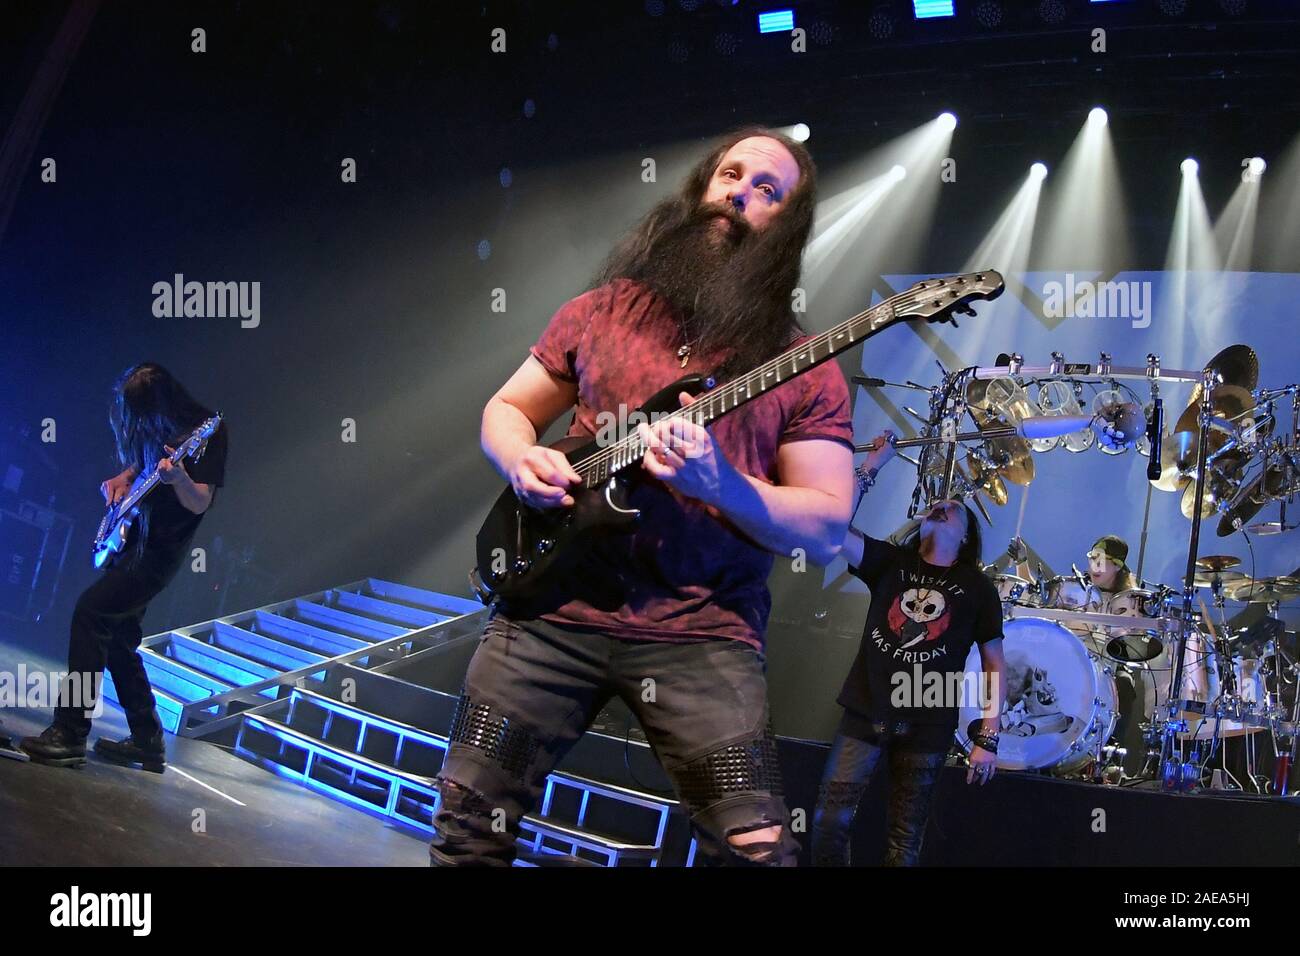 Río de Janeiro, Brasil, 6 de diciembre de 2019. El guitarrista John Petrucci del grupo de metal progresivo Dream Theater durante un concierto en Río de Janeiro. Foto de stock